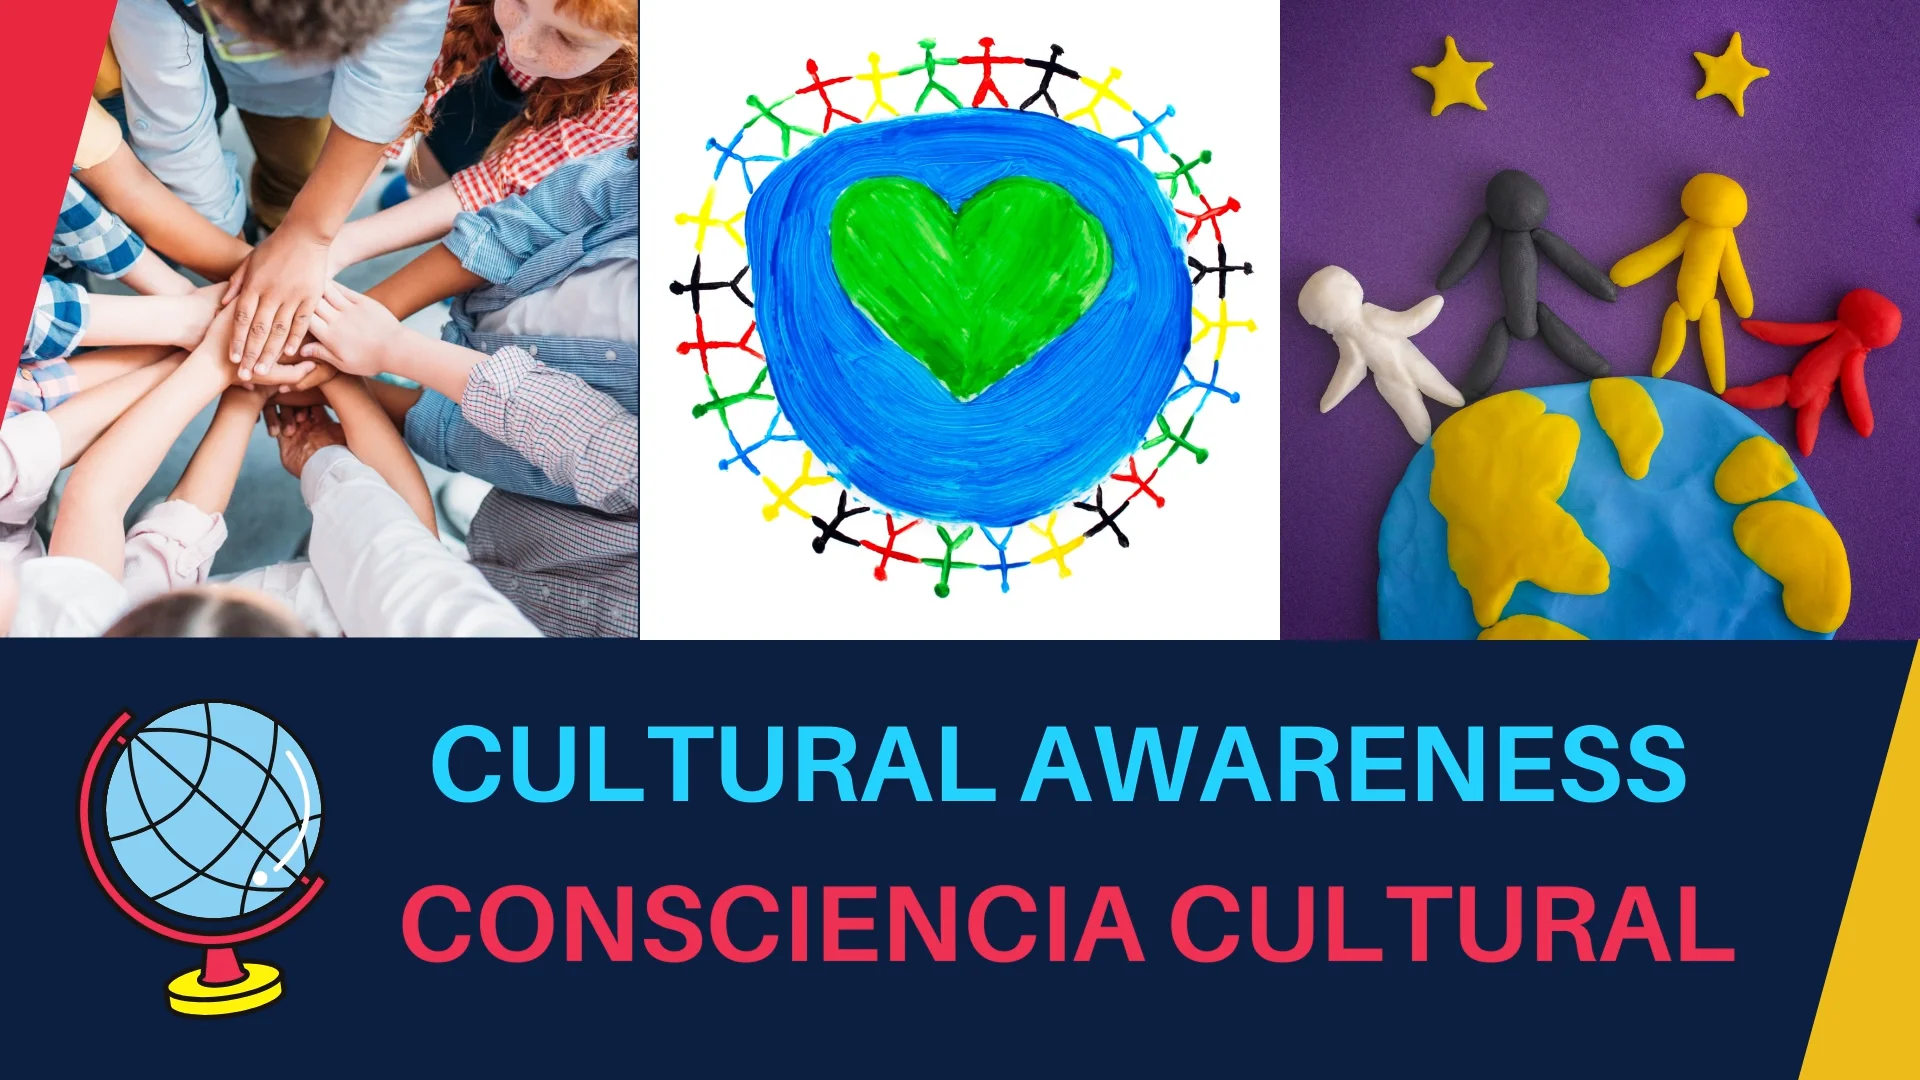 O que é awareness em Espanhol? conciencia